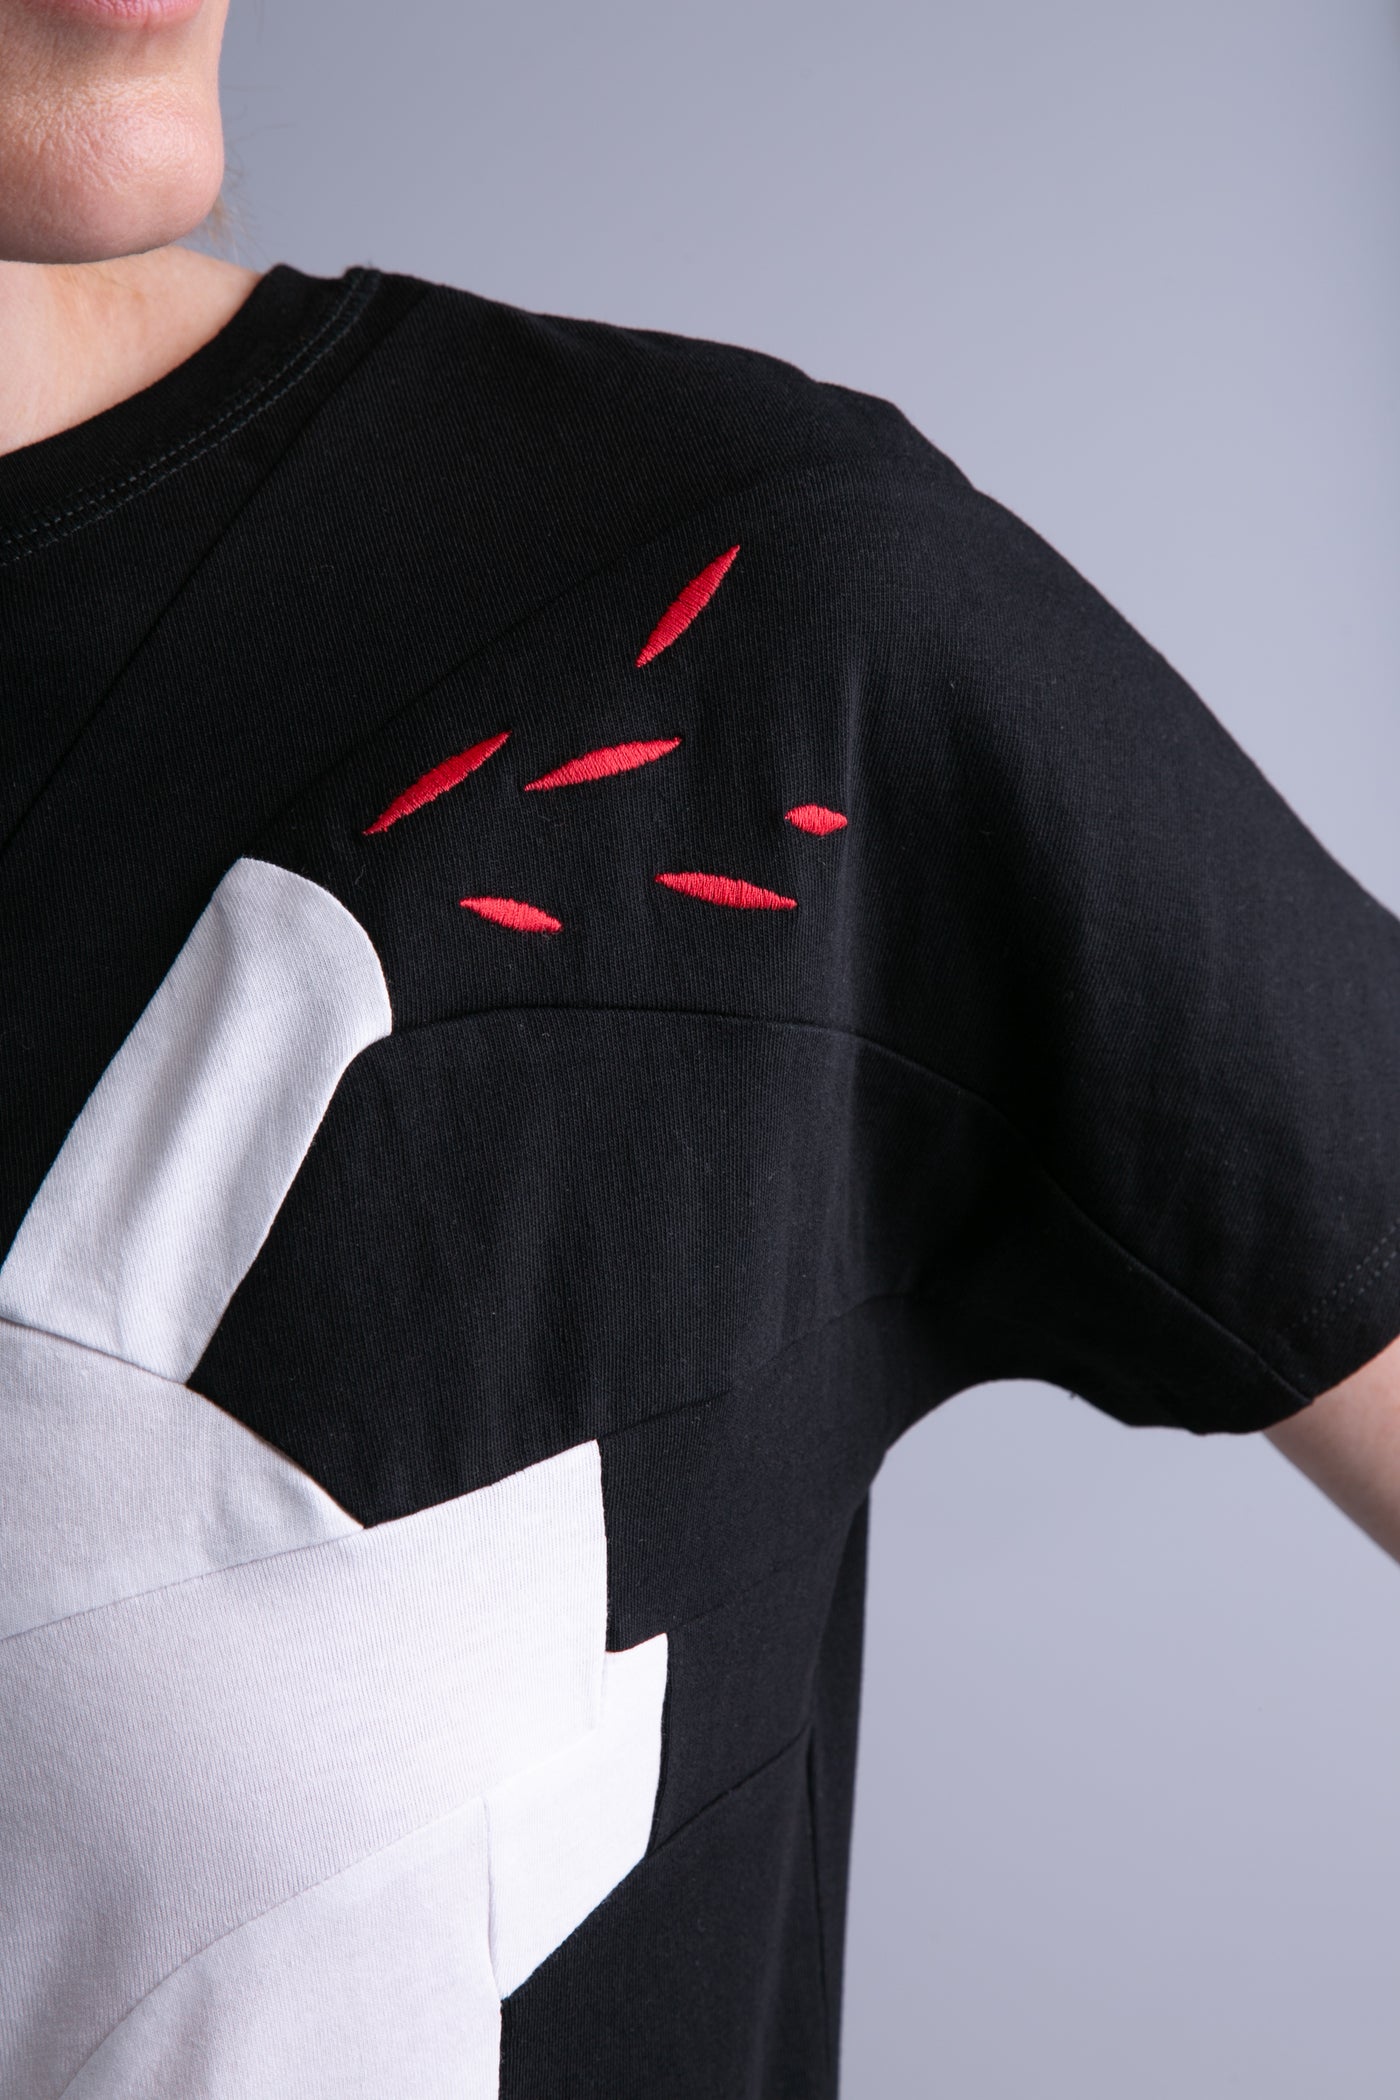 Up-shirt for women, heart motif | Black, white - Reet Aus